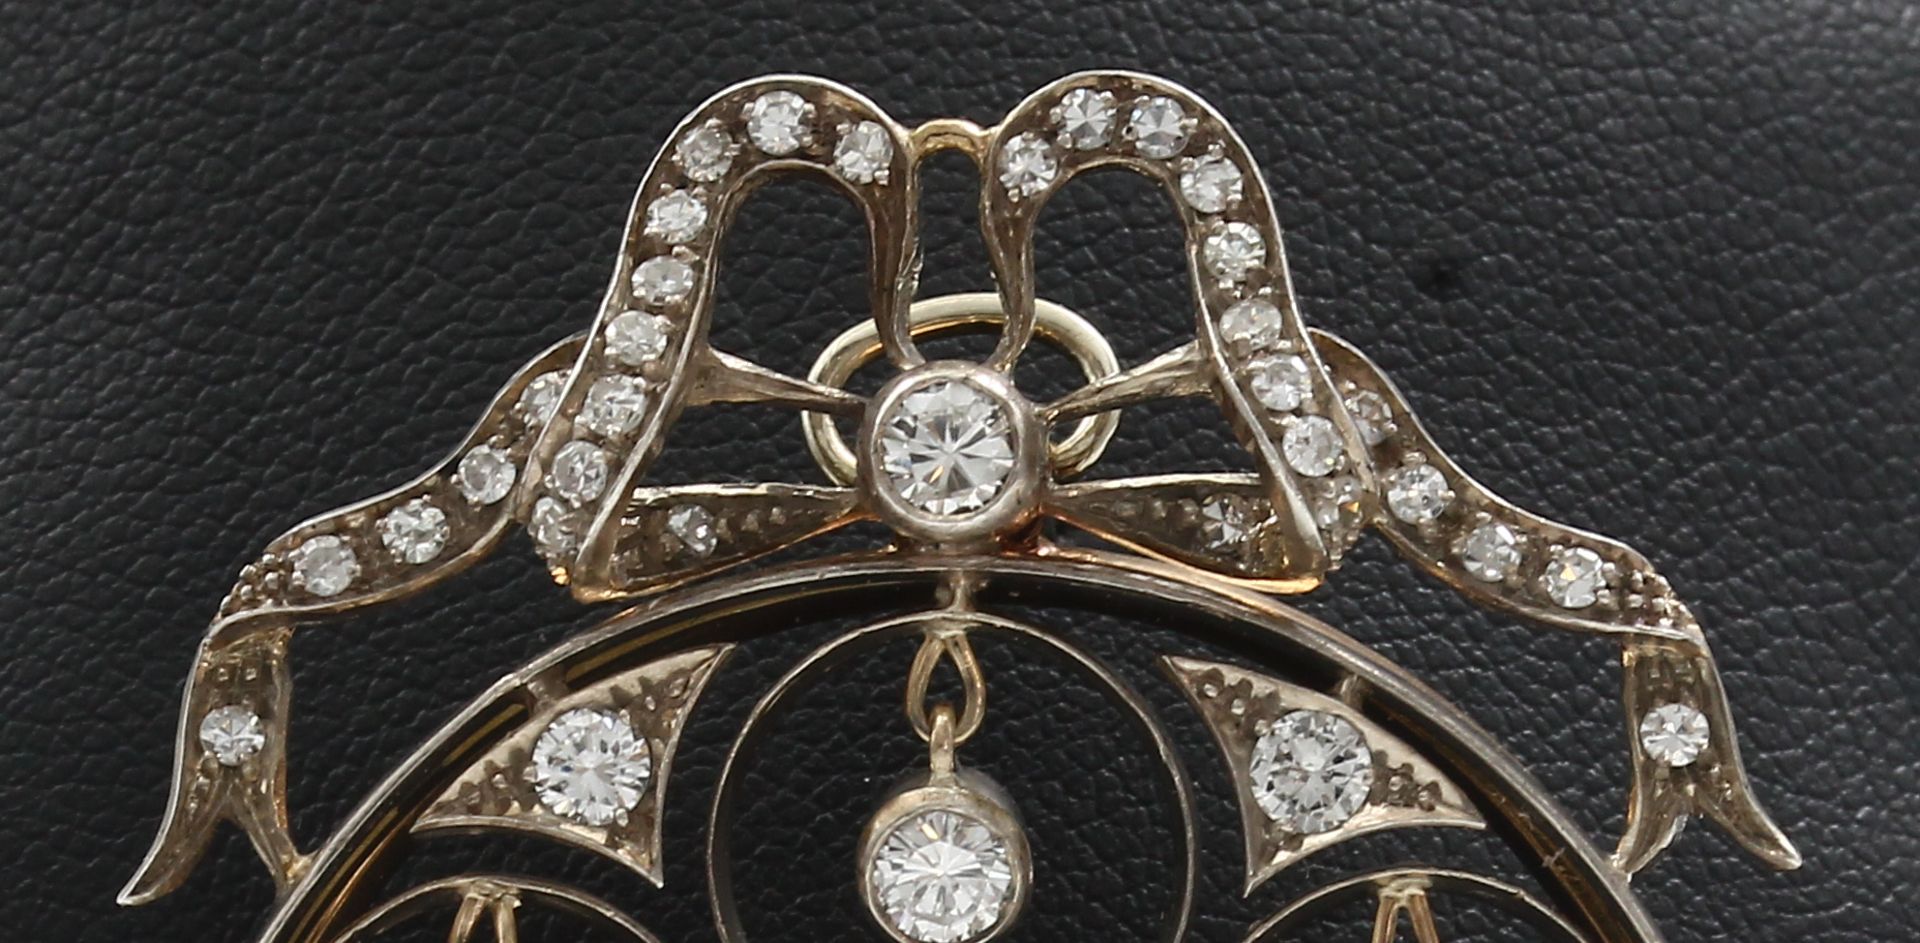 18 kt Gold Diamant-Anhänger/Brosche, um 1910/20, GG - Bild 2 aus 5